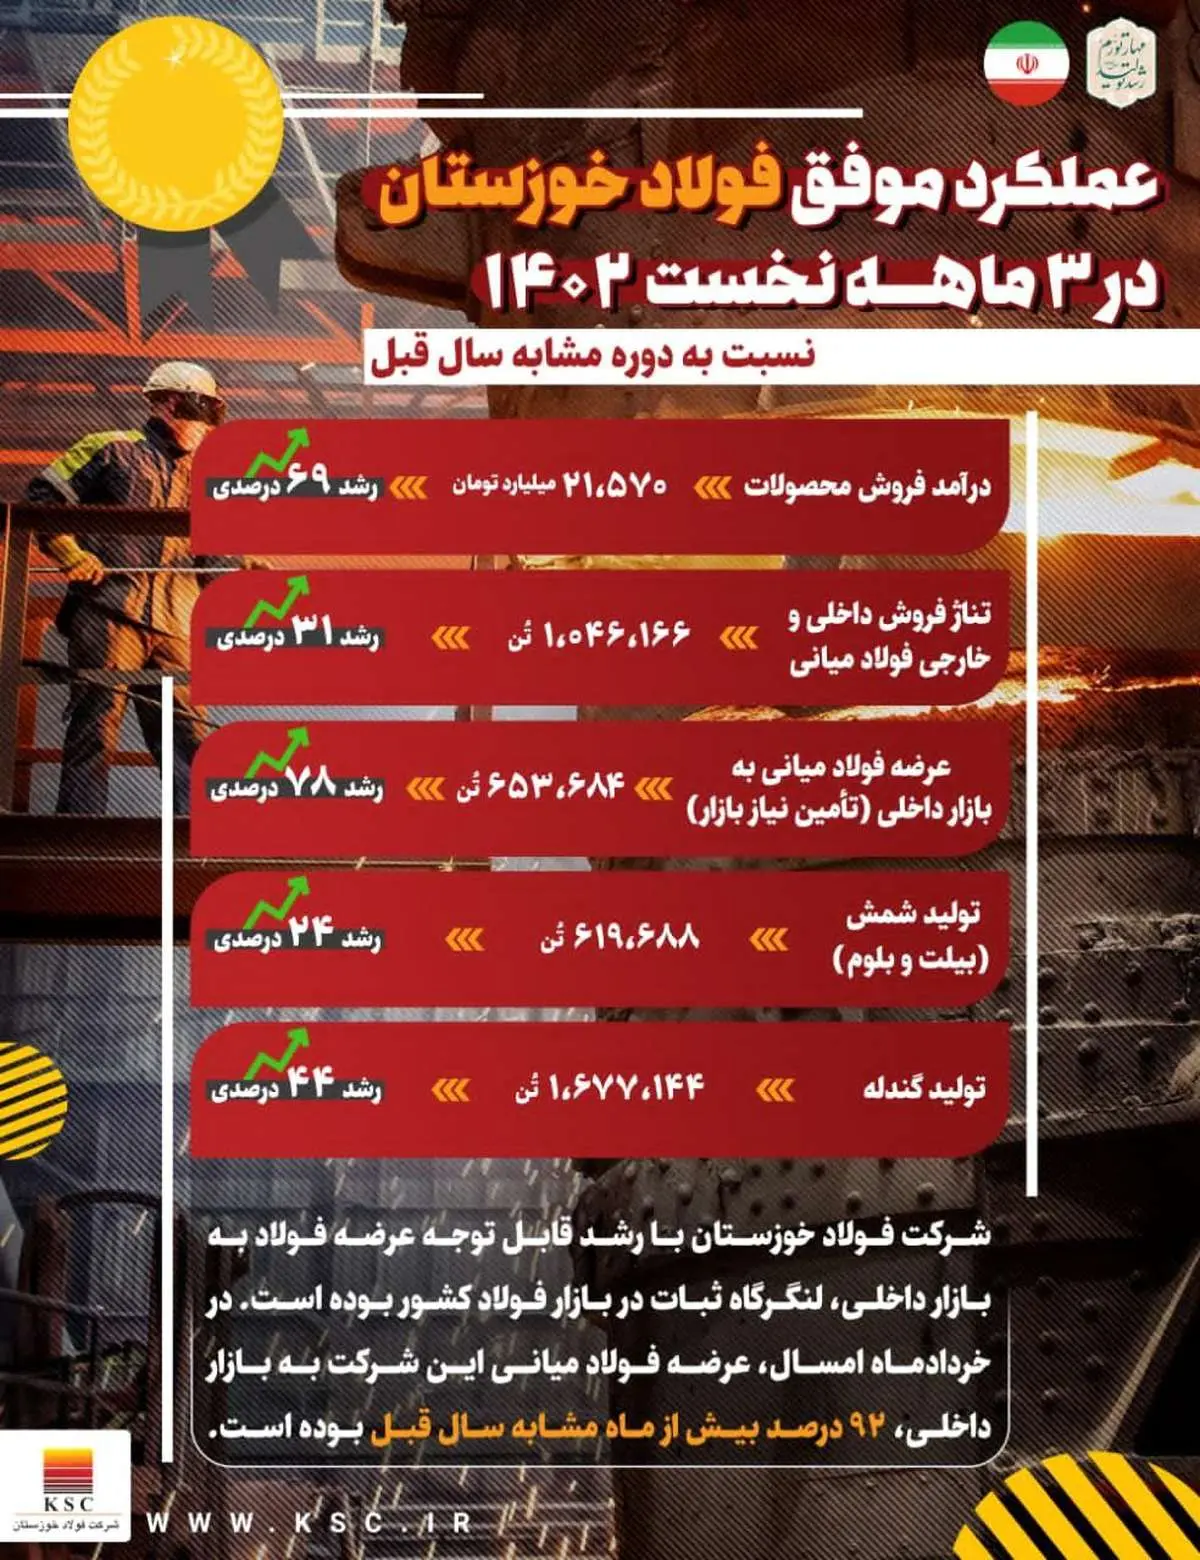  عملکرد موفق فولاد خوزستان در ۳ ماهه نخست سال جاری